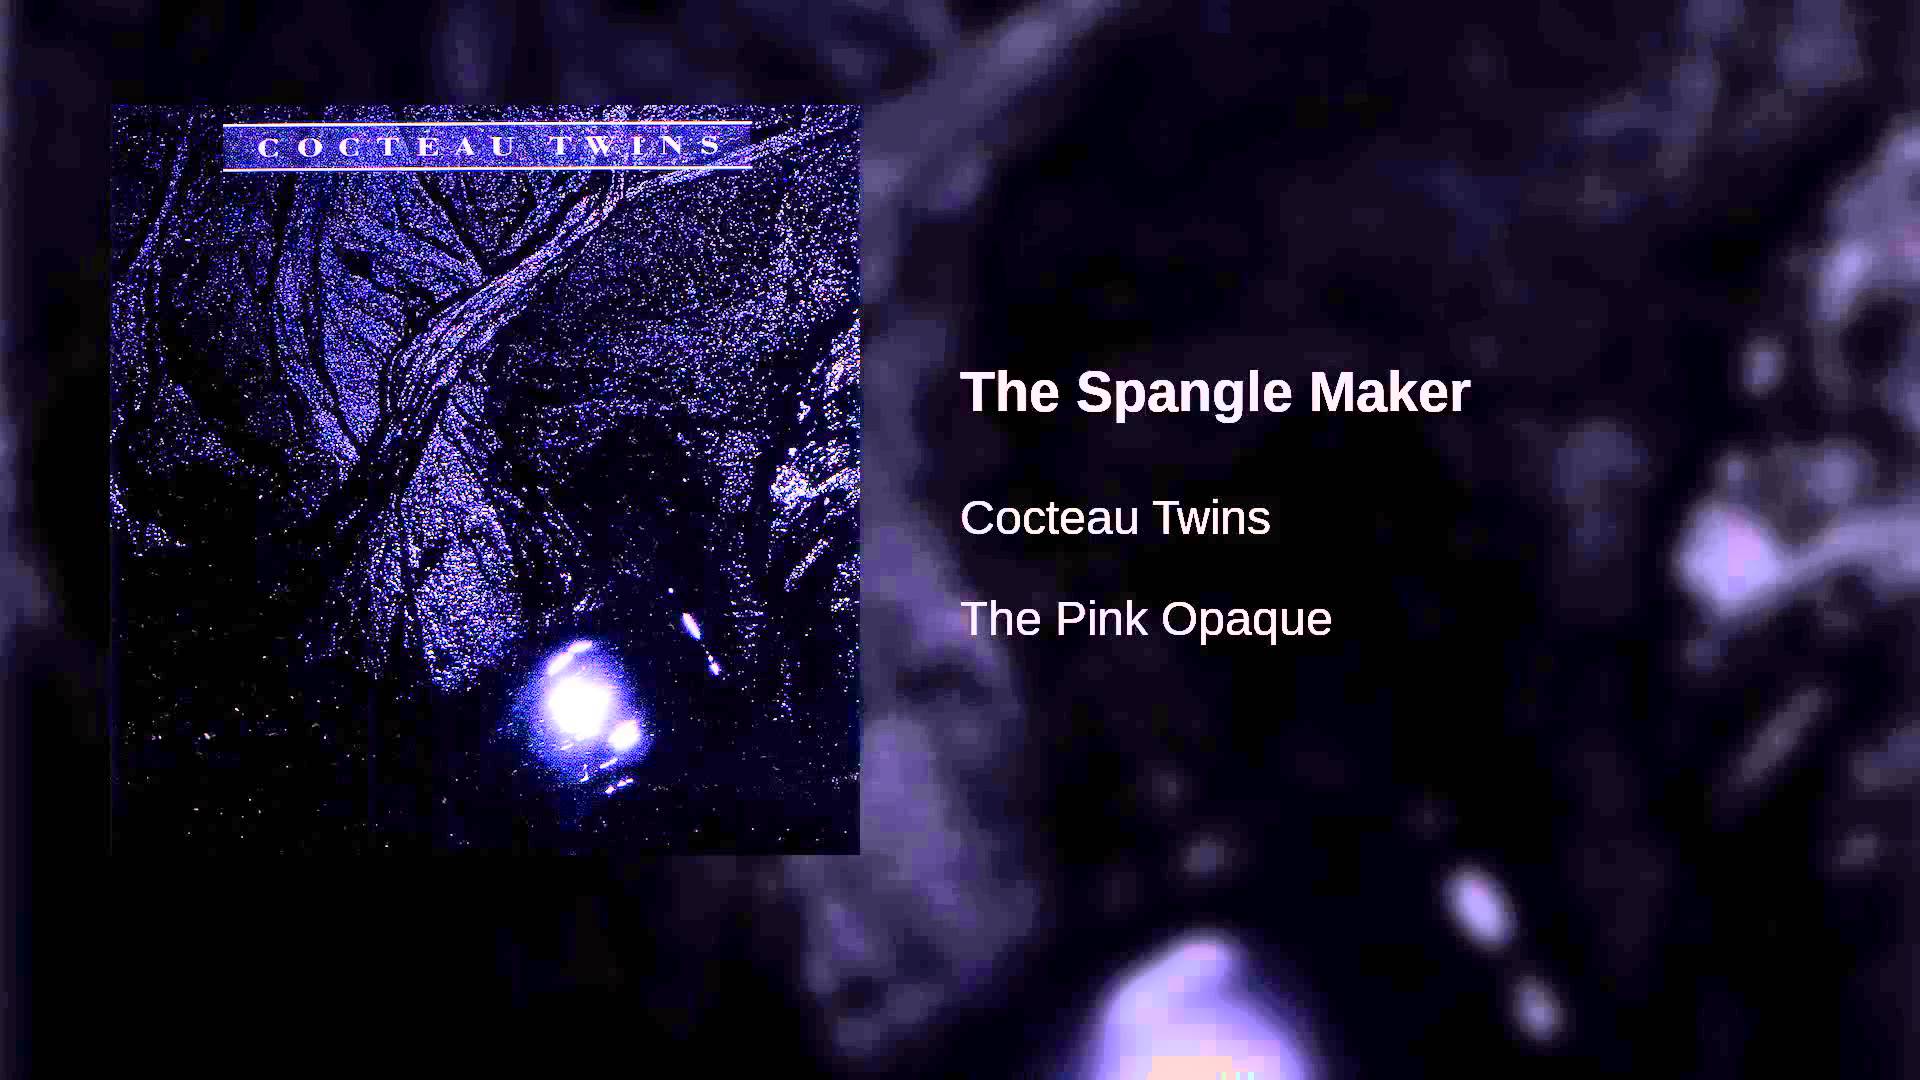 Cocteau Twins Spangle Maker. cocteau twins